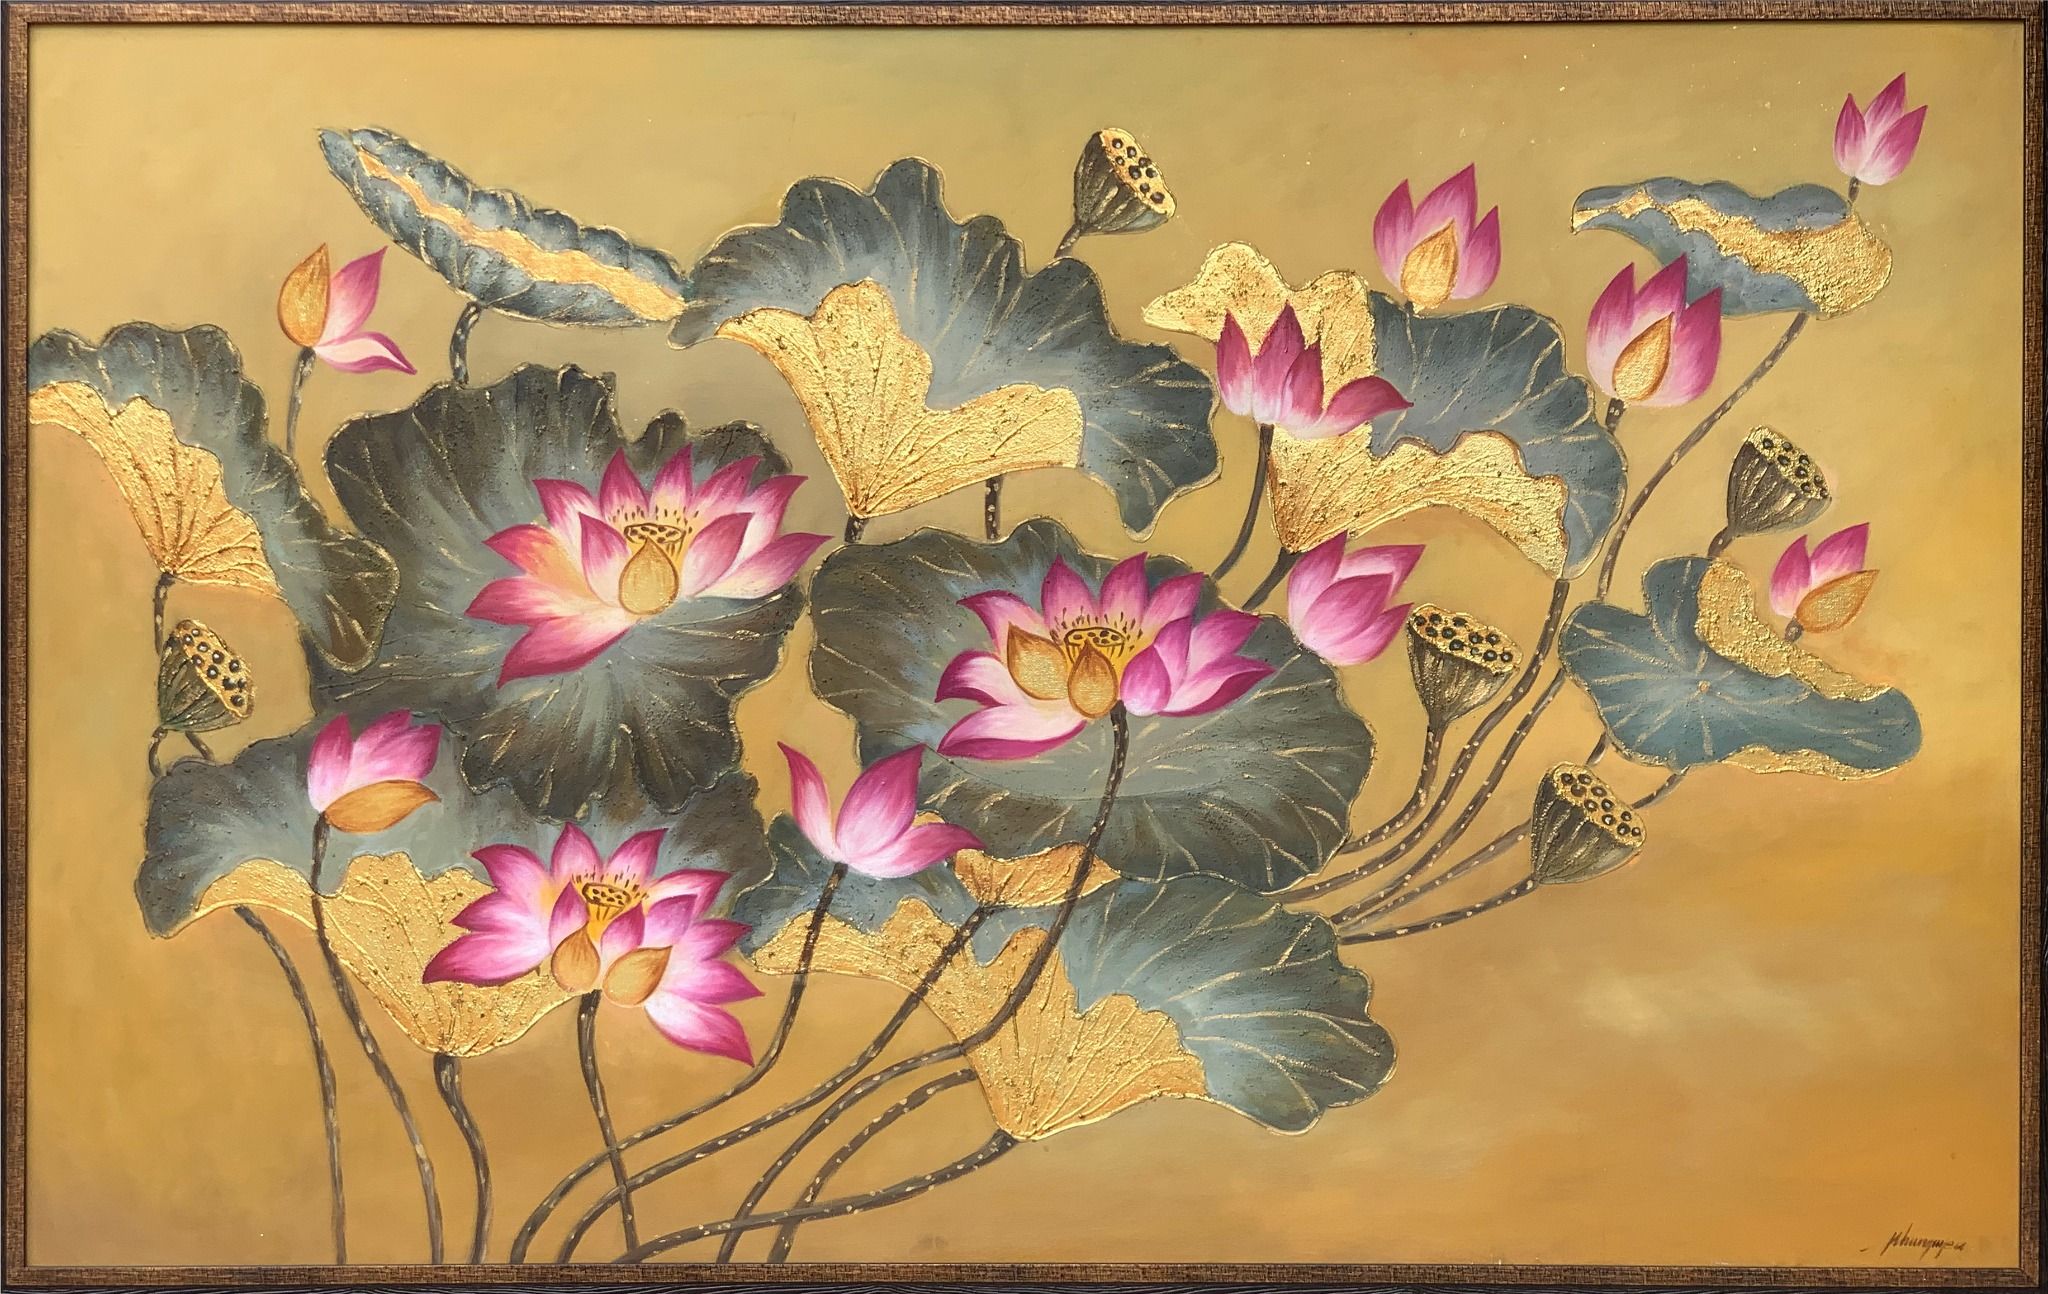  Tranh Sơn dầu - Hoa sen vàng - 100x150cm 